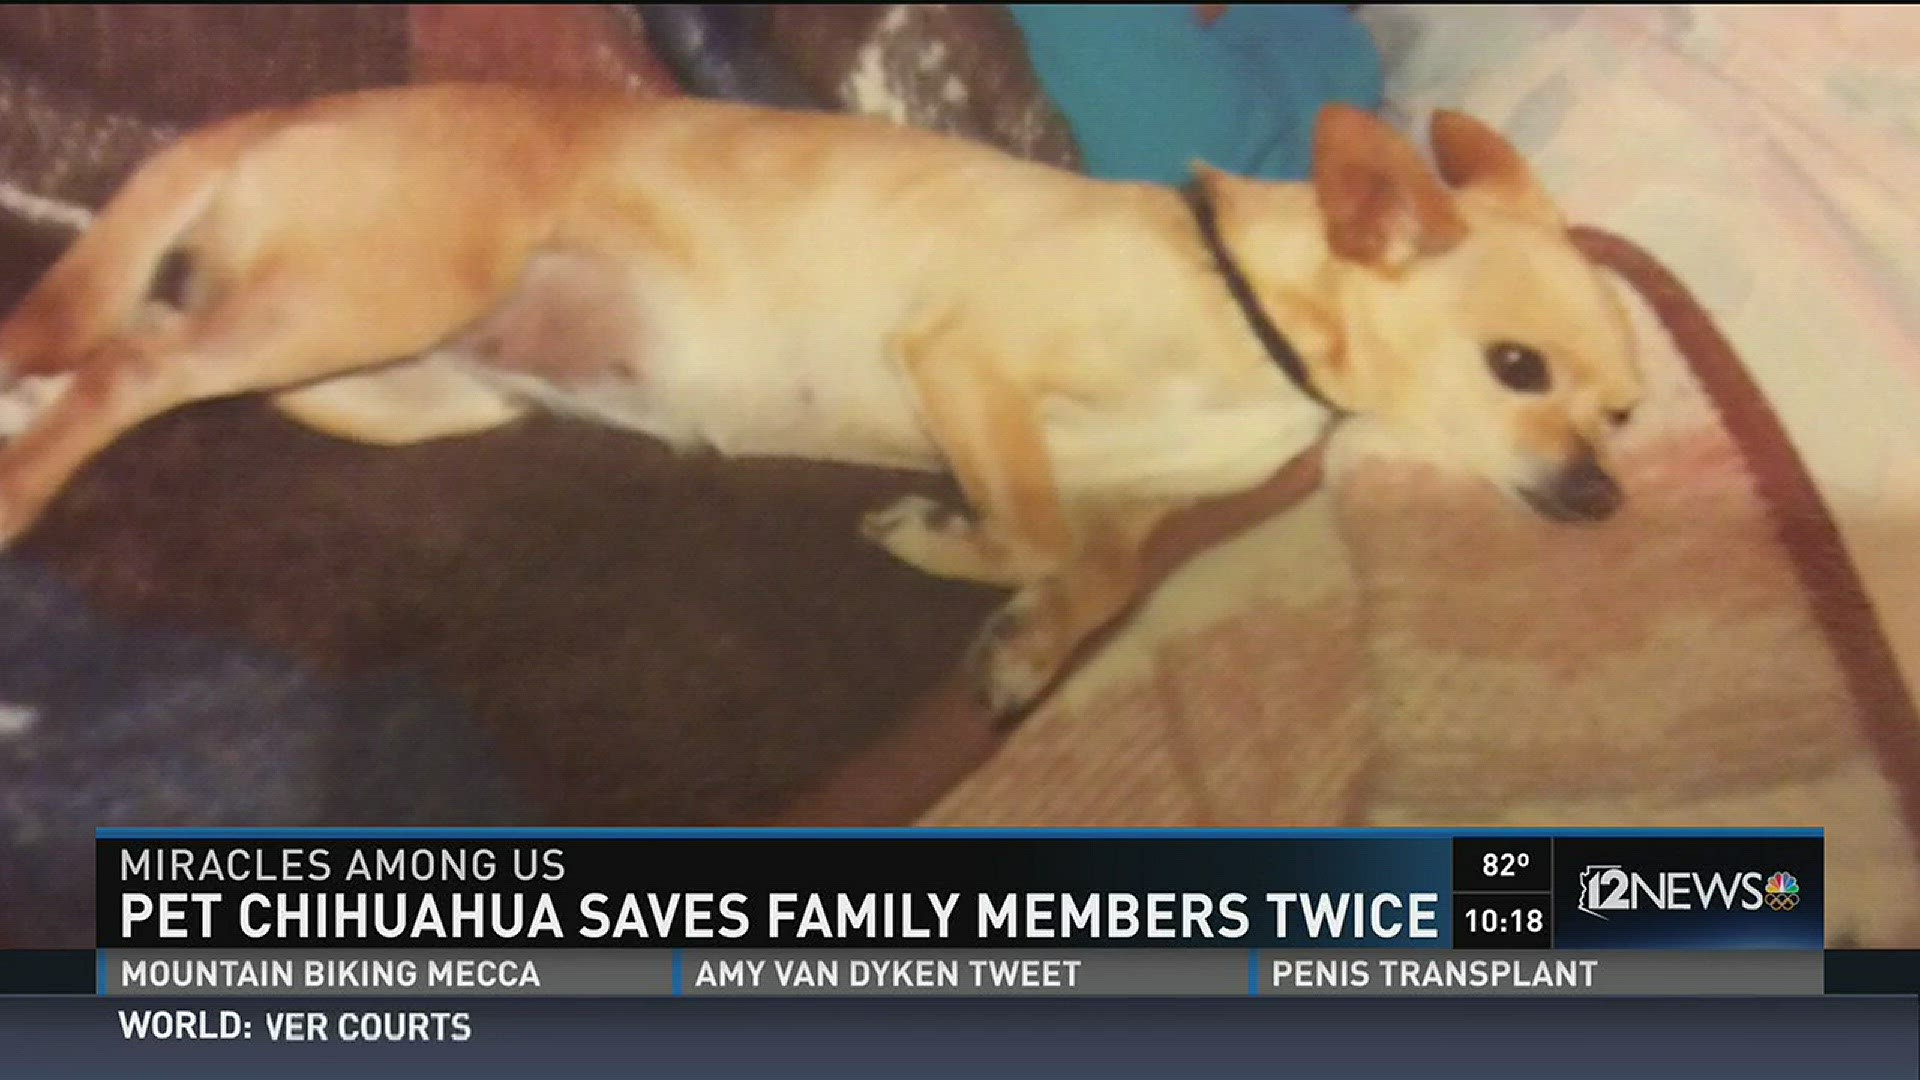 Pet chihuahua saves family members twice.